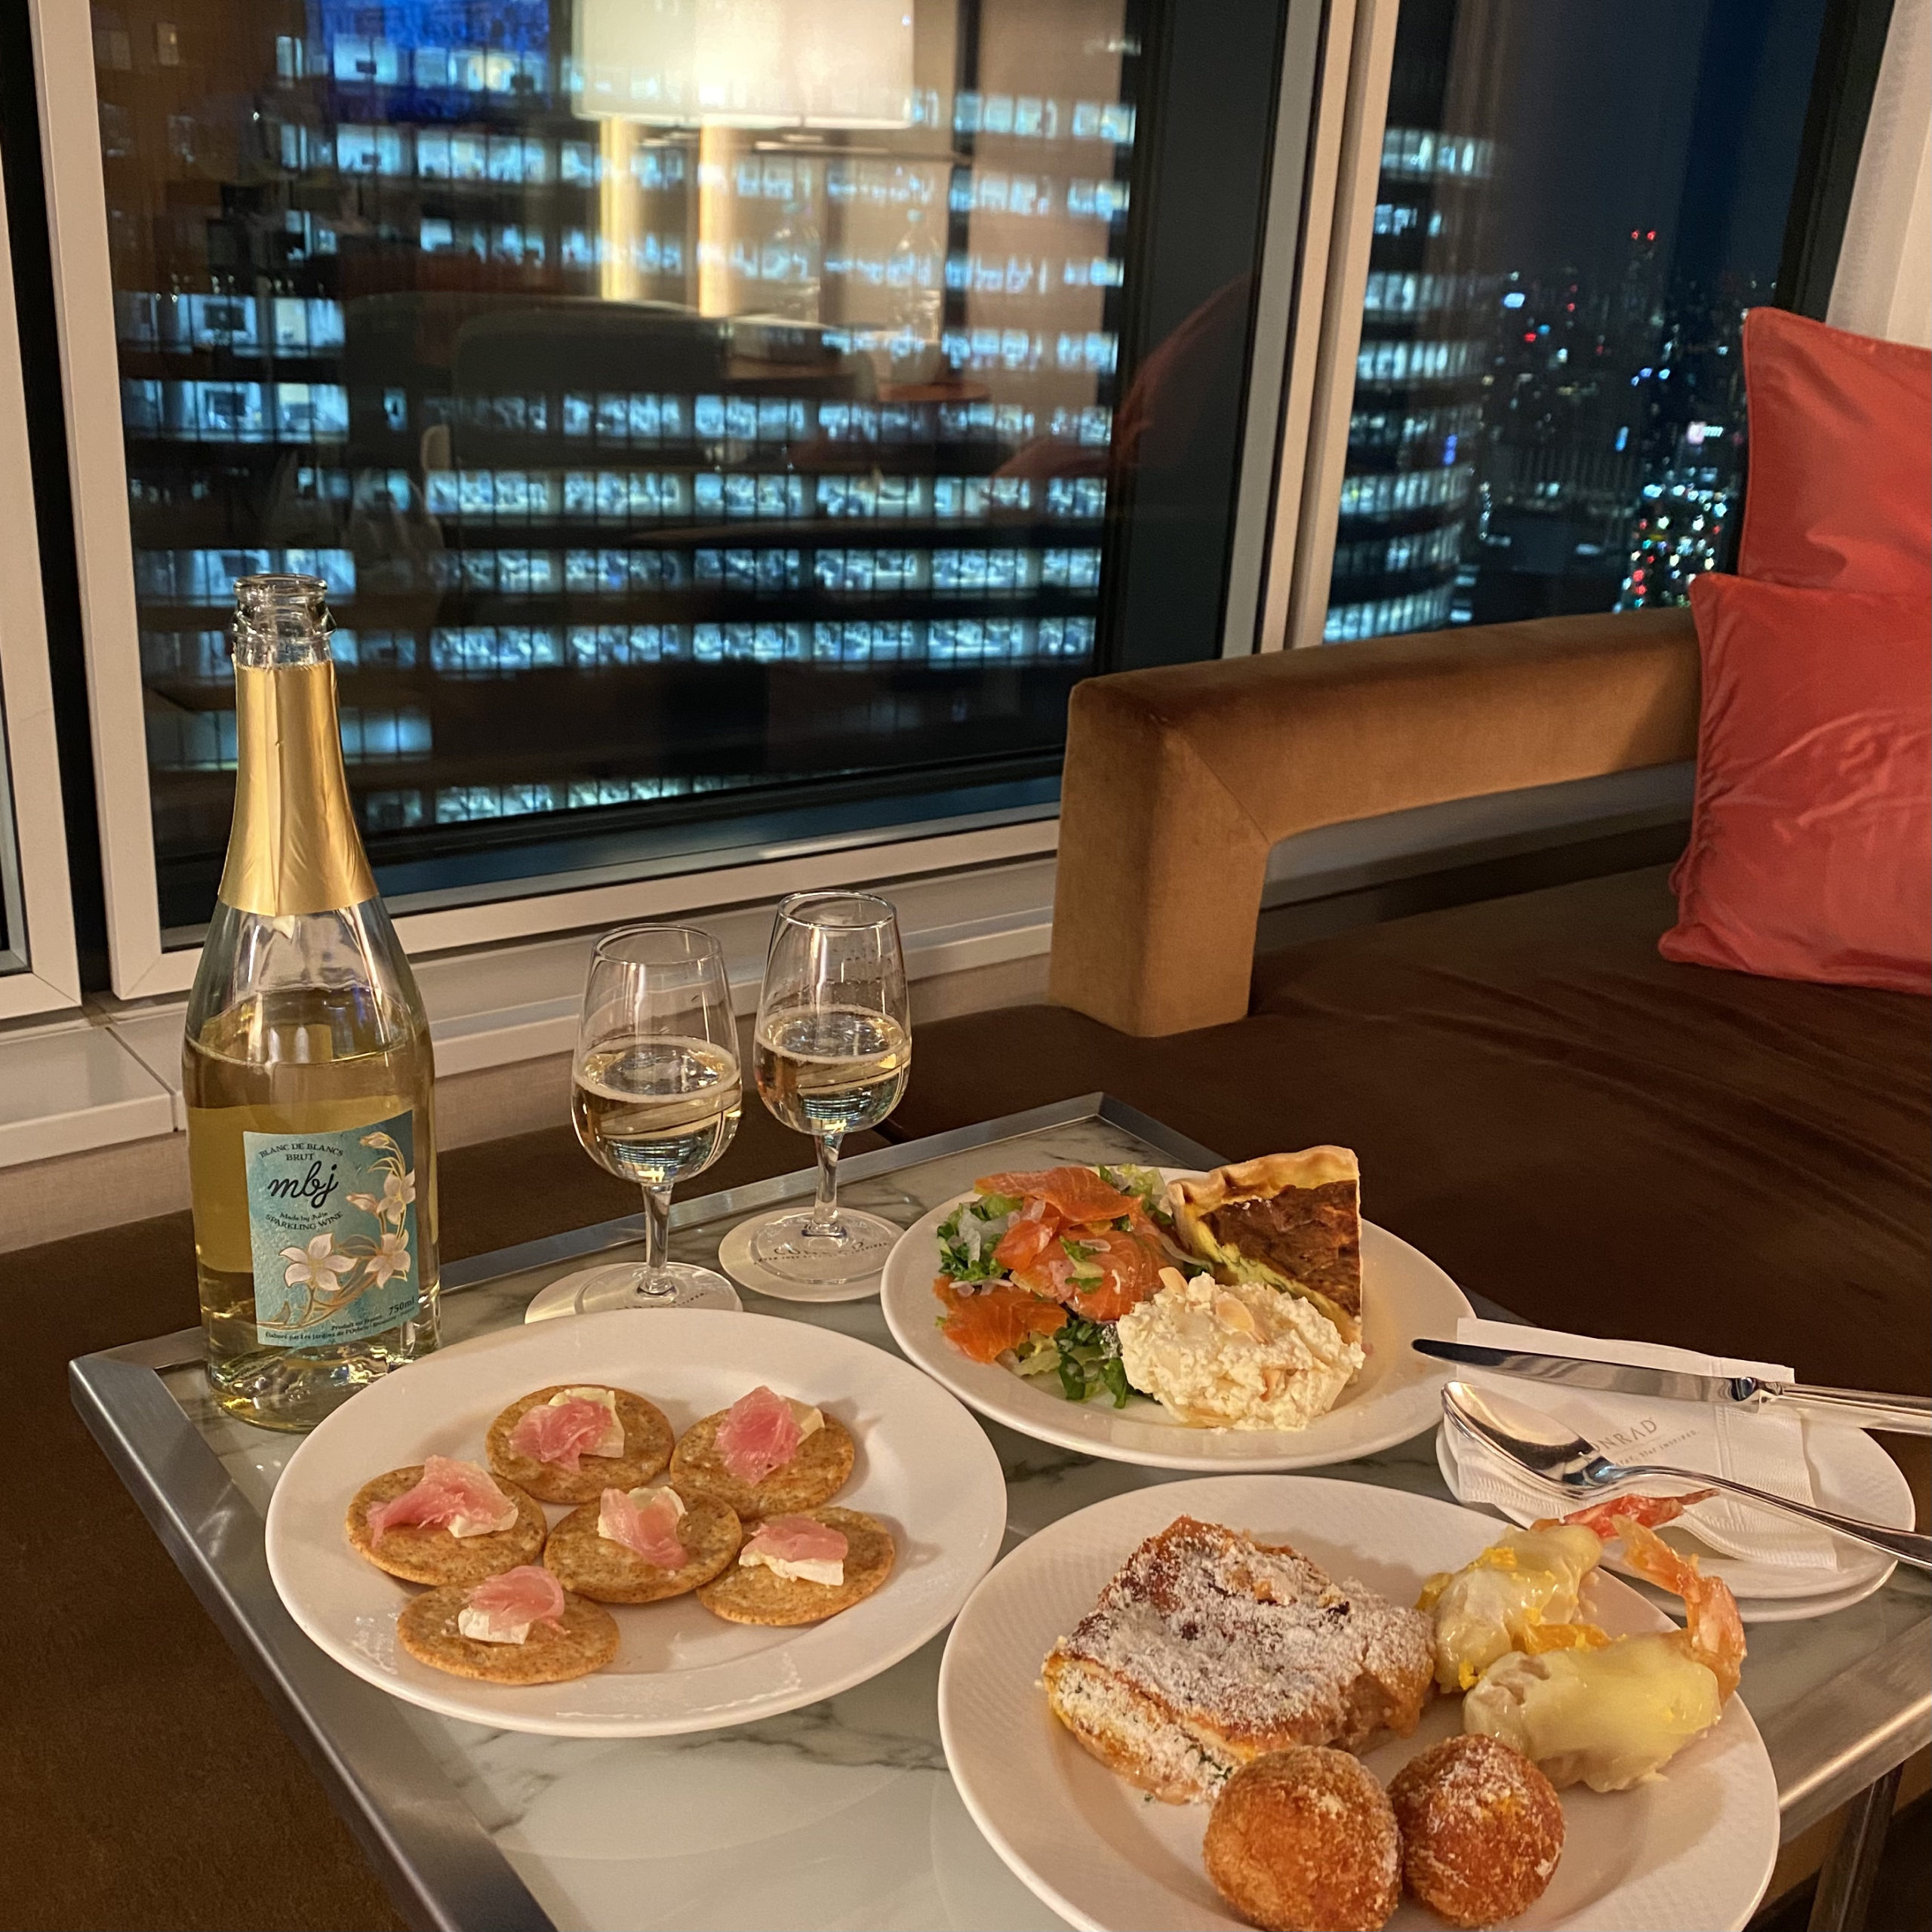 コンラッド東京の客室でご飯を食べることにしました。夜景を楽しみながらのんびりと夕食を楽しむことが出来ます。